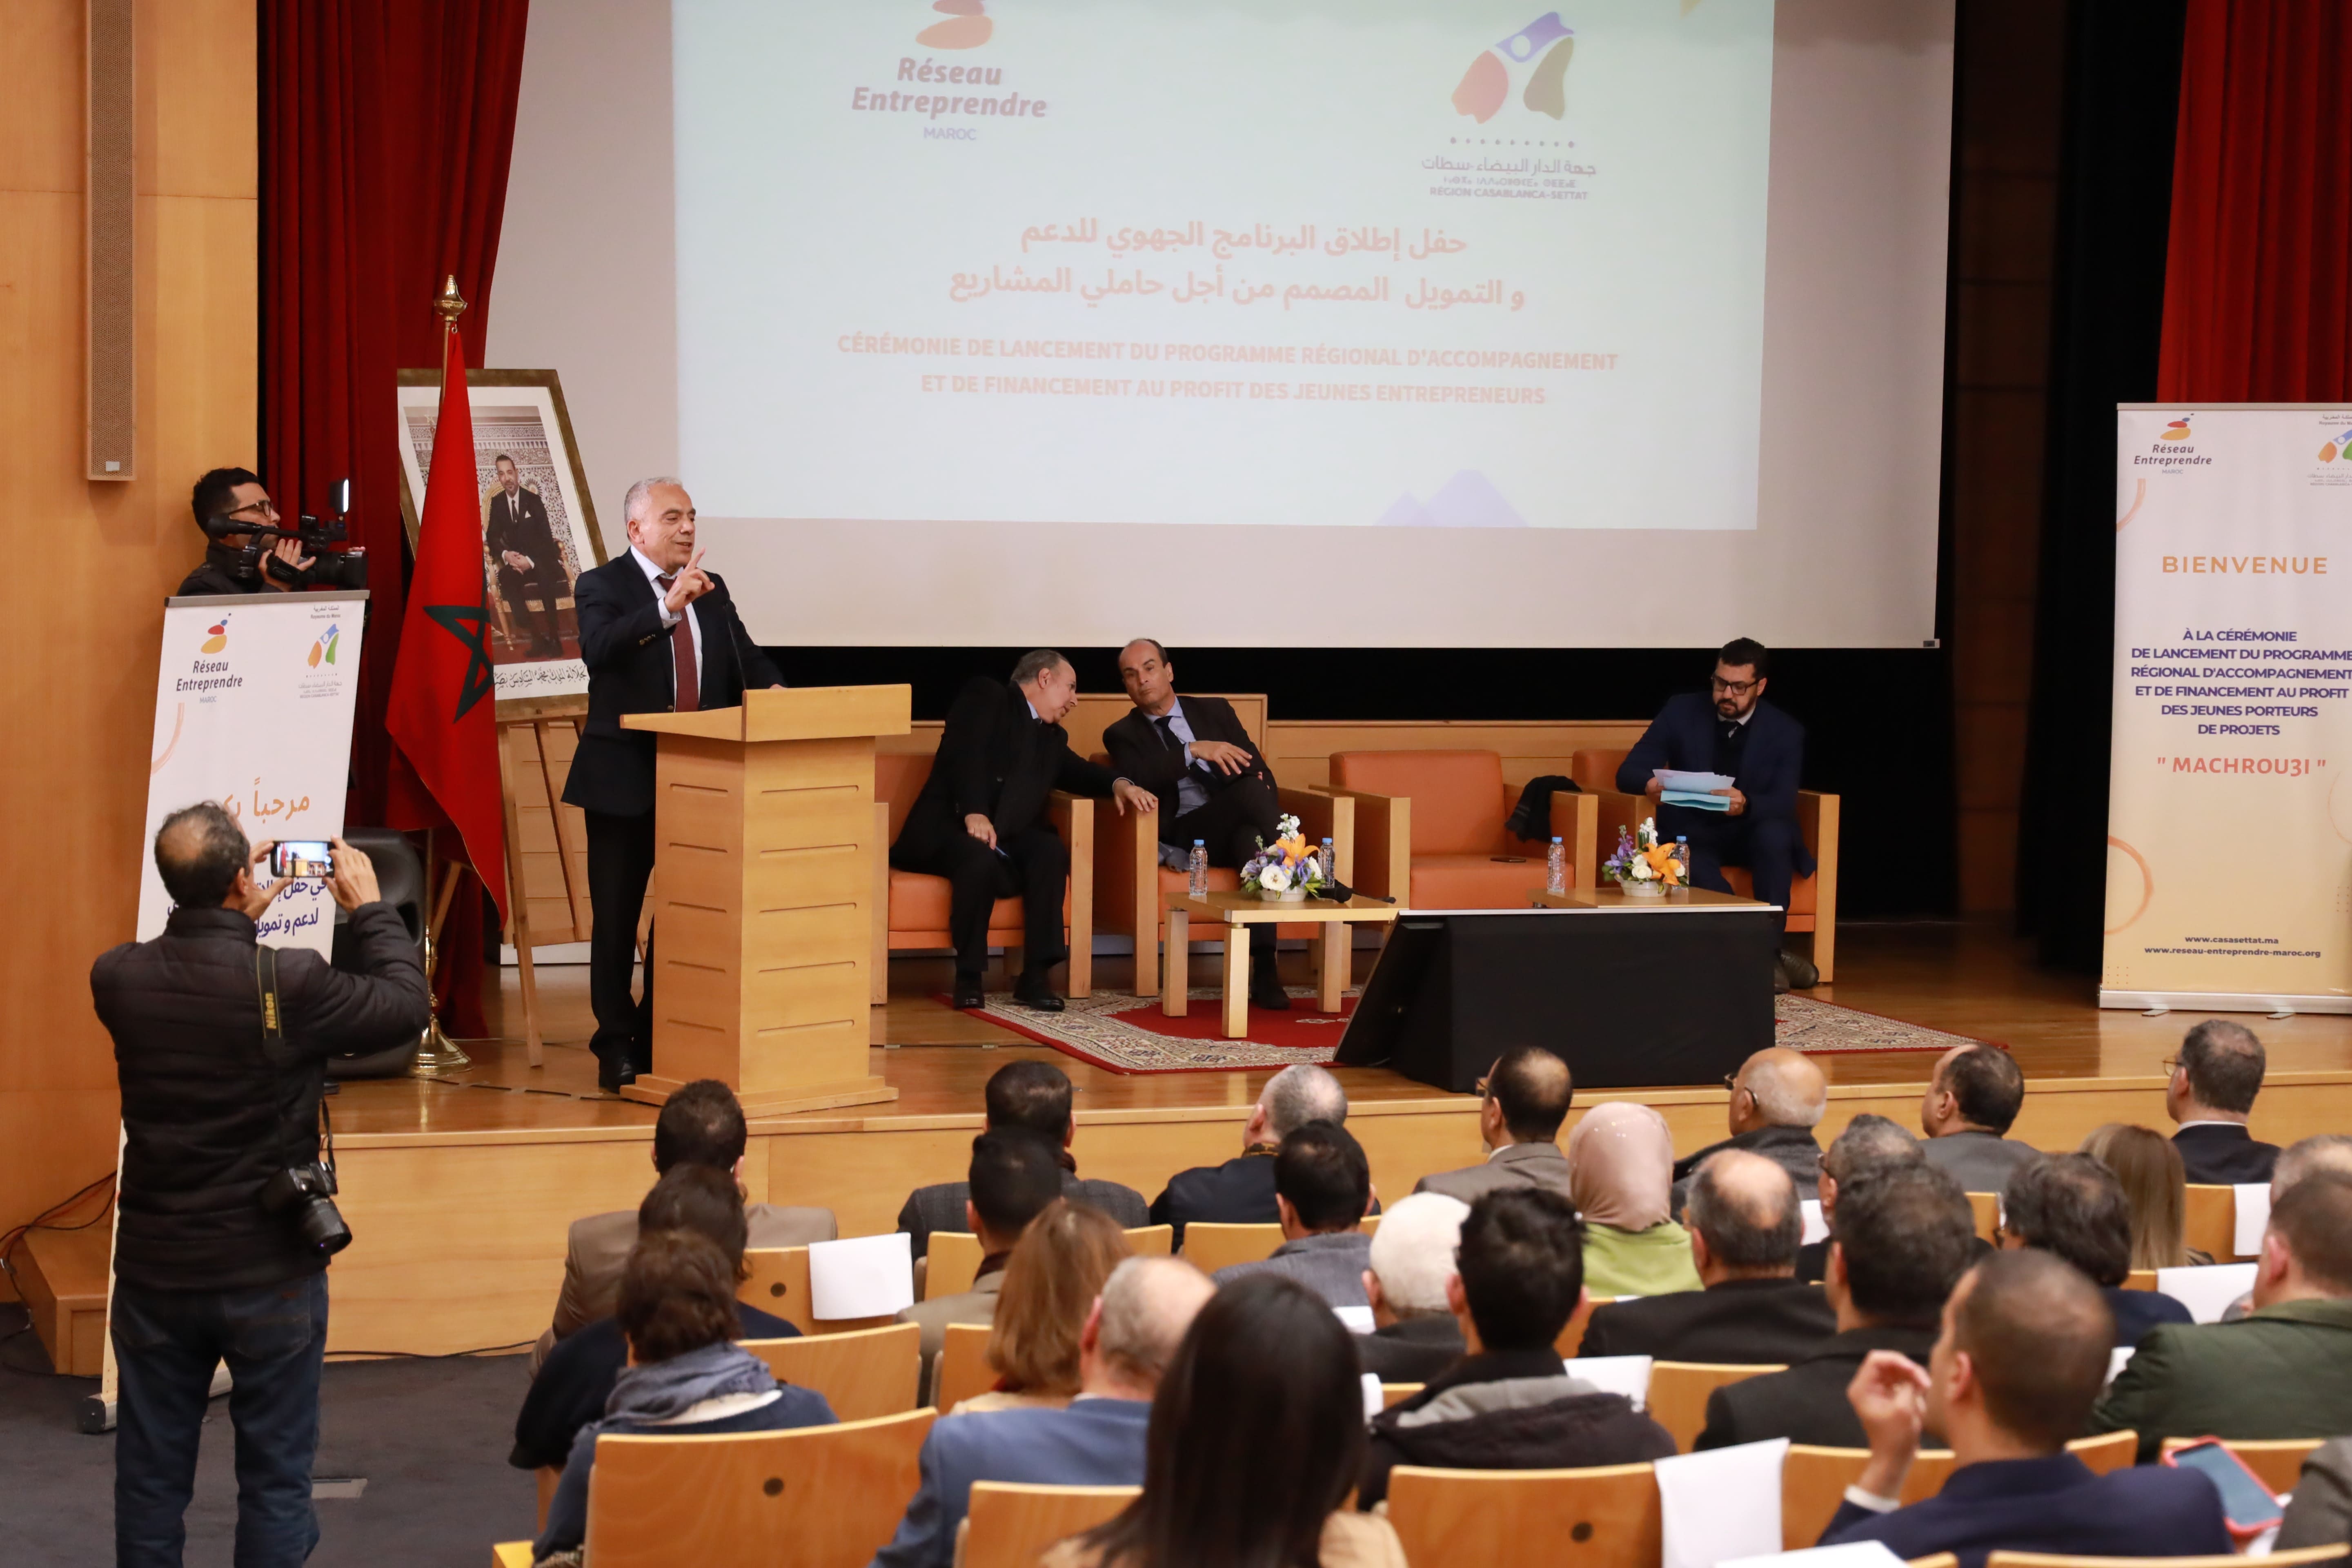 الدار البيضاء - سطات : إطلاق البرنامج الجهوي لمواكبة وتمويل حاملي المشاريع "مشروعي"